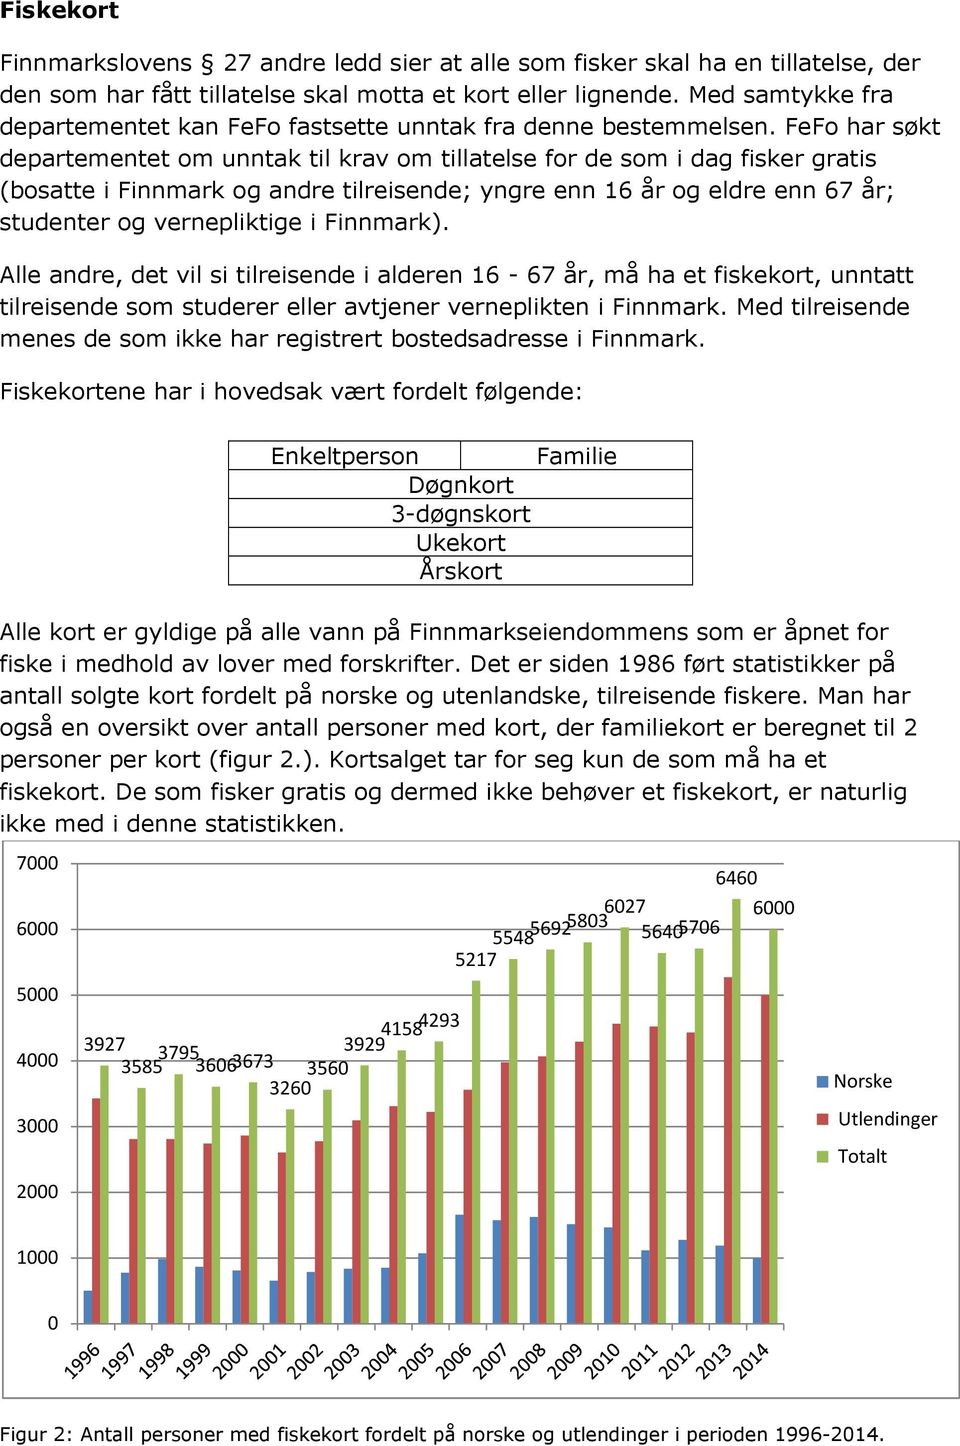 FeFo har søkt departementet om unntak til krav om tillatelse for de som i dag fisker gratis (bosatte i Finnmark og andre tilreisende; yngre enn 16 år og eldre enn 67 år; studenter og vernepliktige i